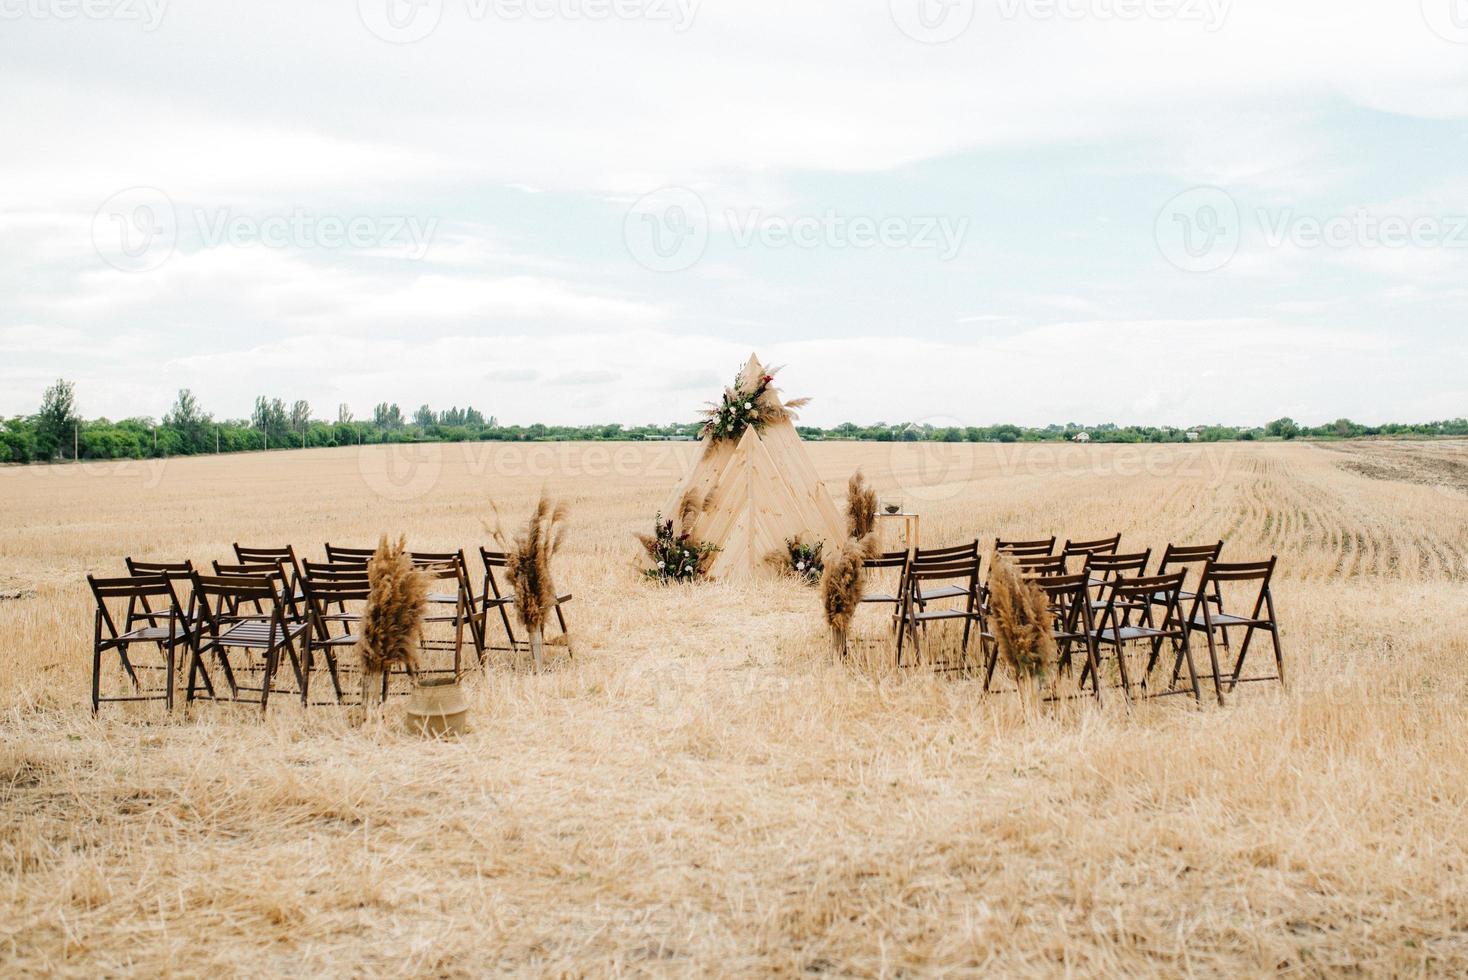 zona cerimonia di nozze foto